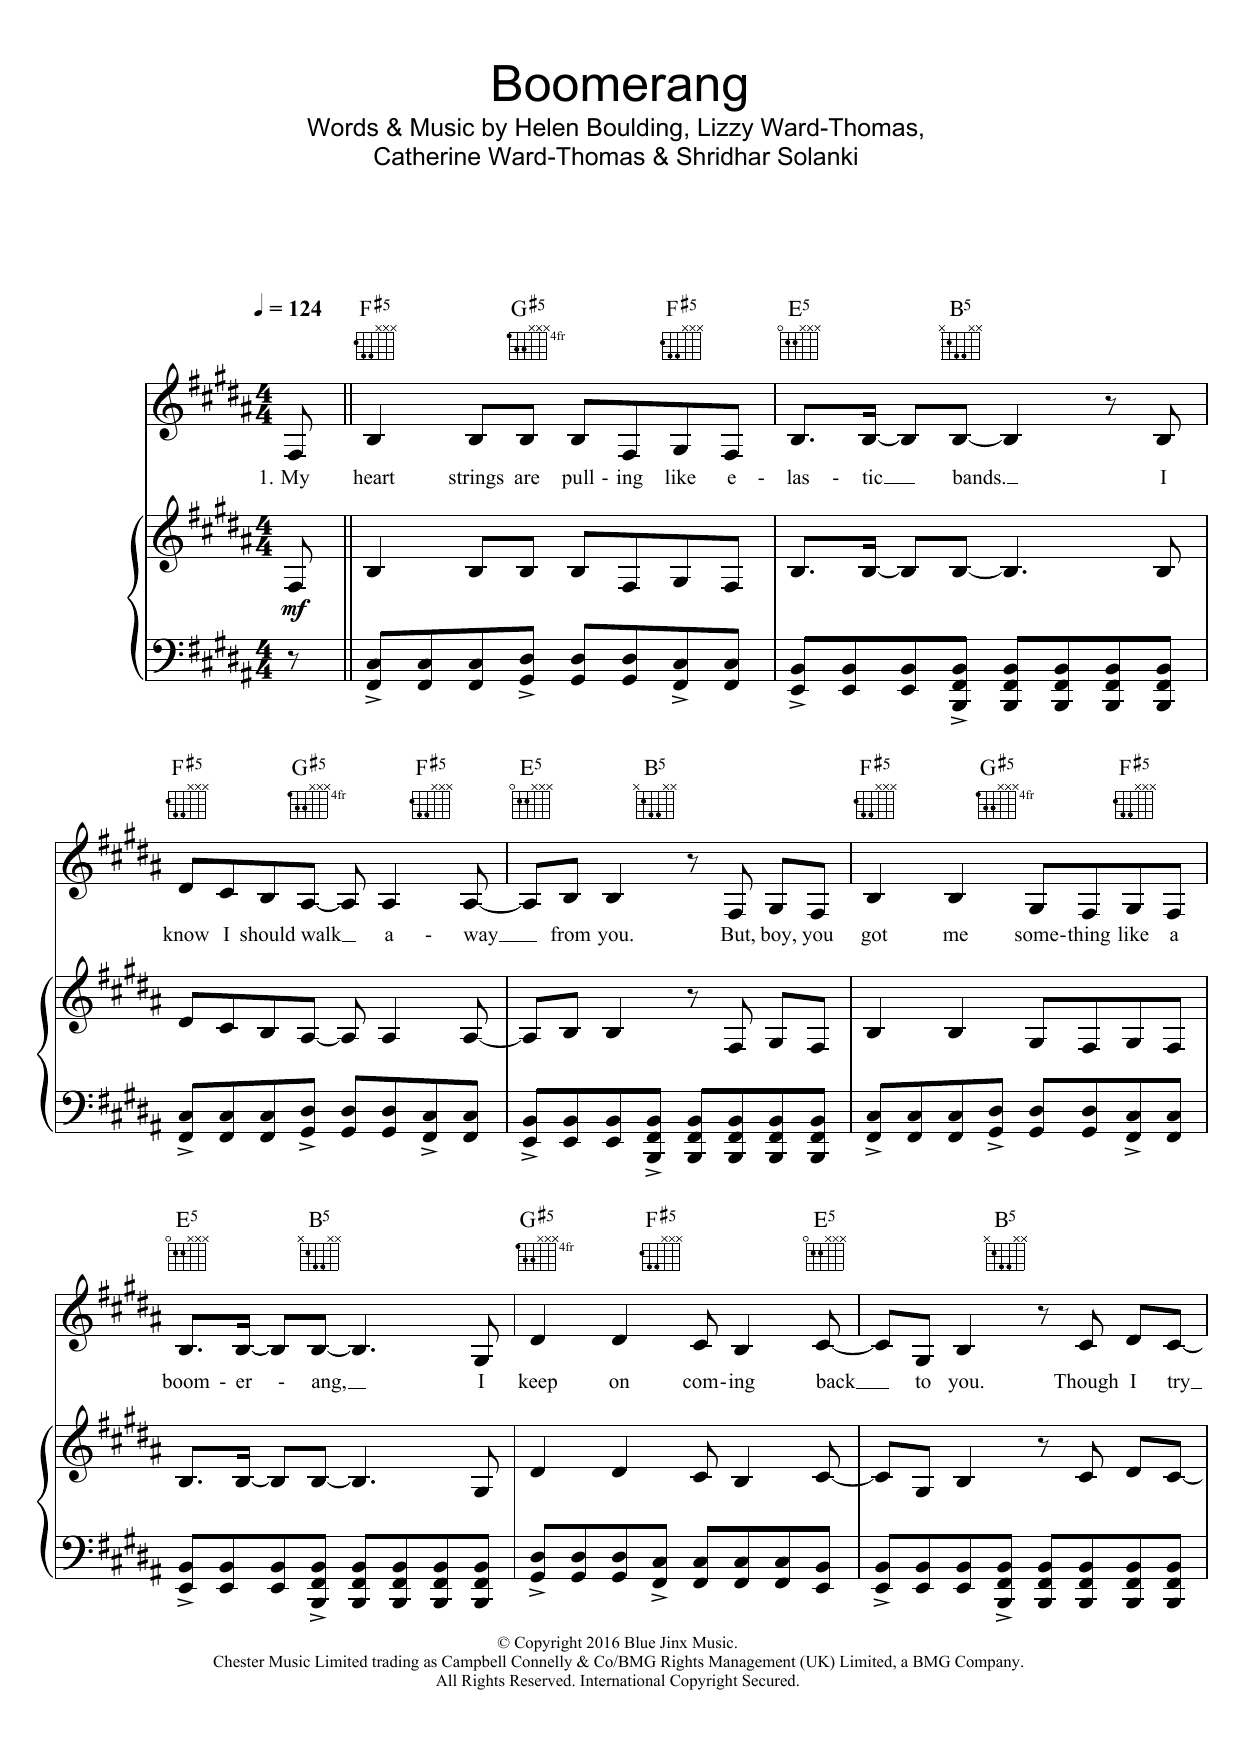 Ward Thomas Boomerang Sheet Music Notes & Chords for Piano, Vocal & Guitar (Right-Hand Melody) - Download or Print PDF